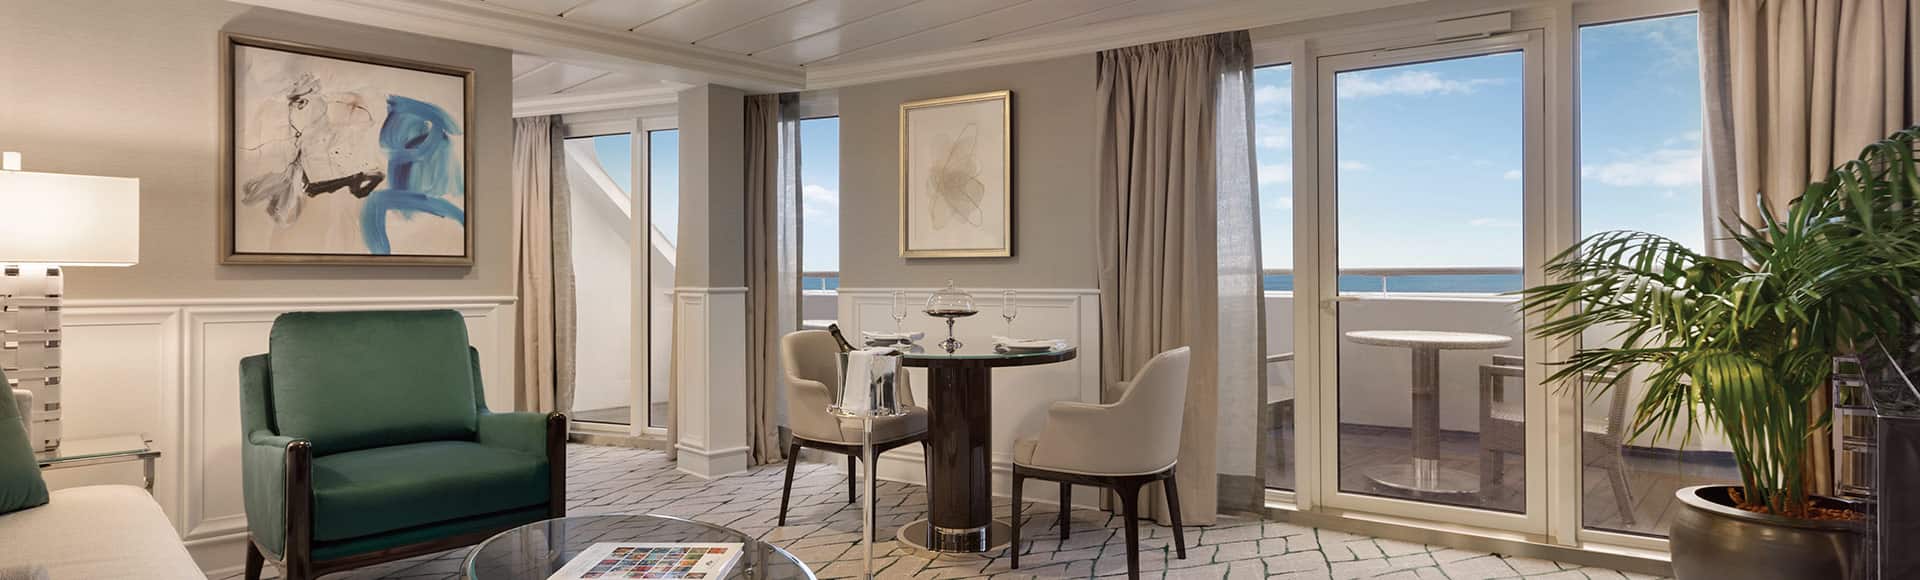 Sirena Class Oceania Cruises Suites & Stateroom